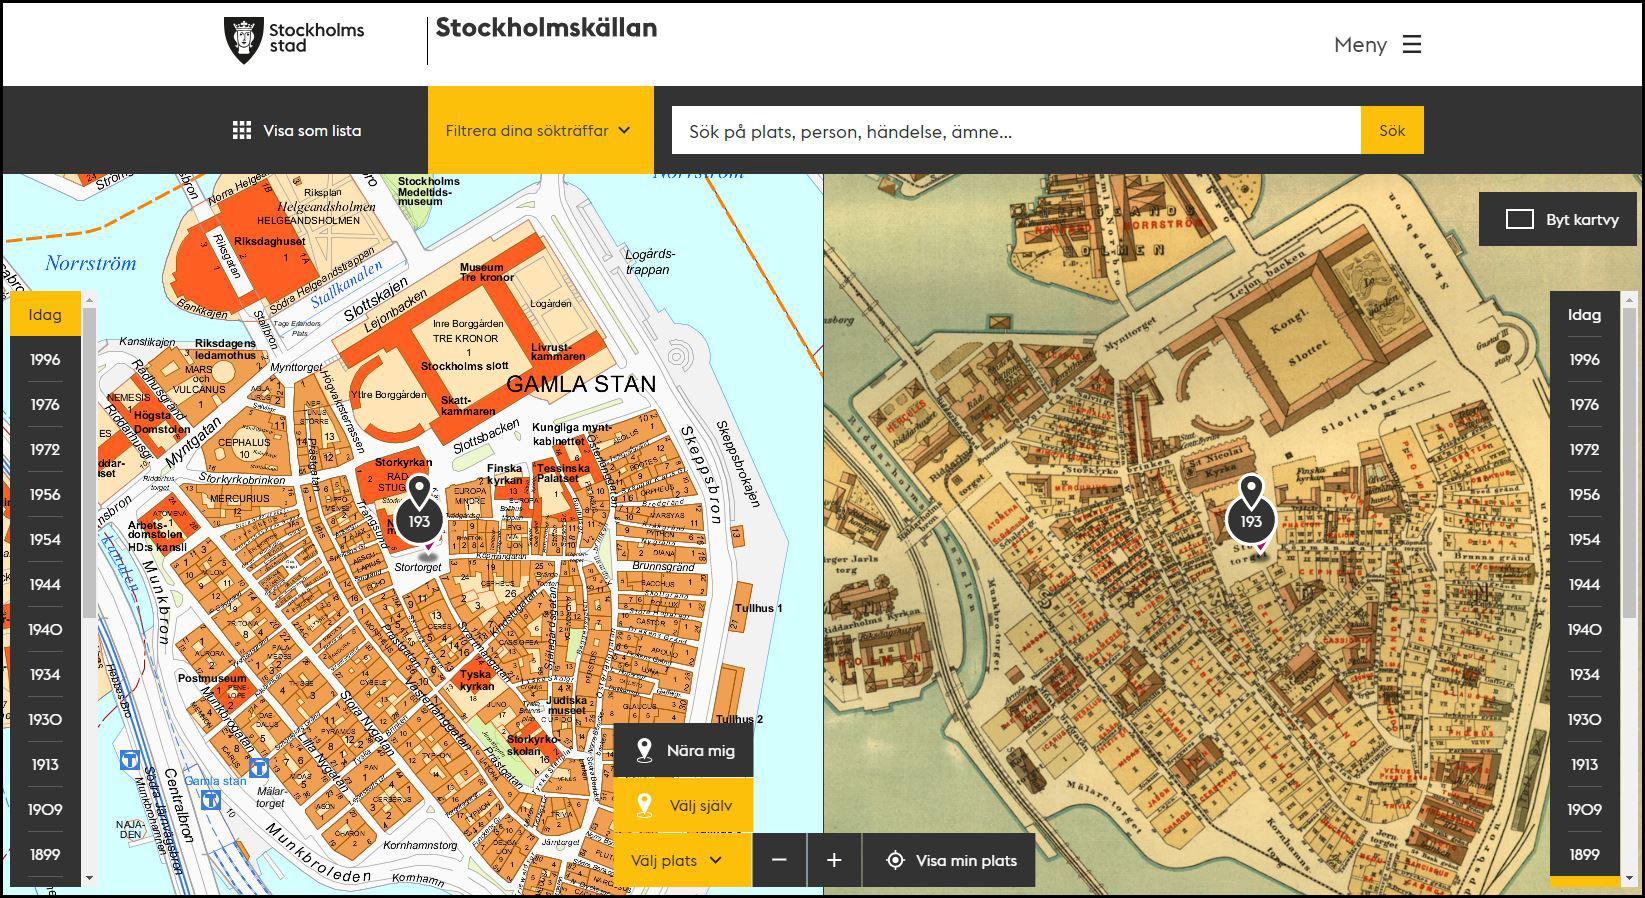 Sök på karta på stockholmskällan.se